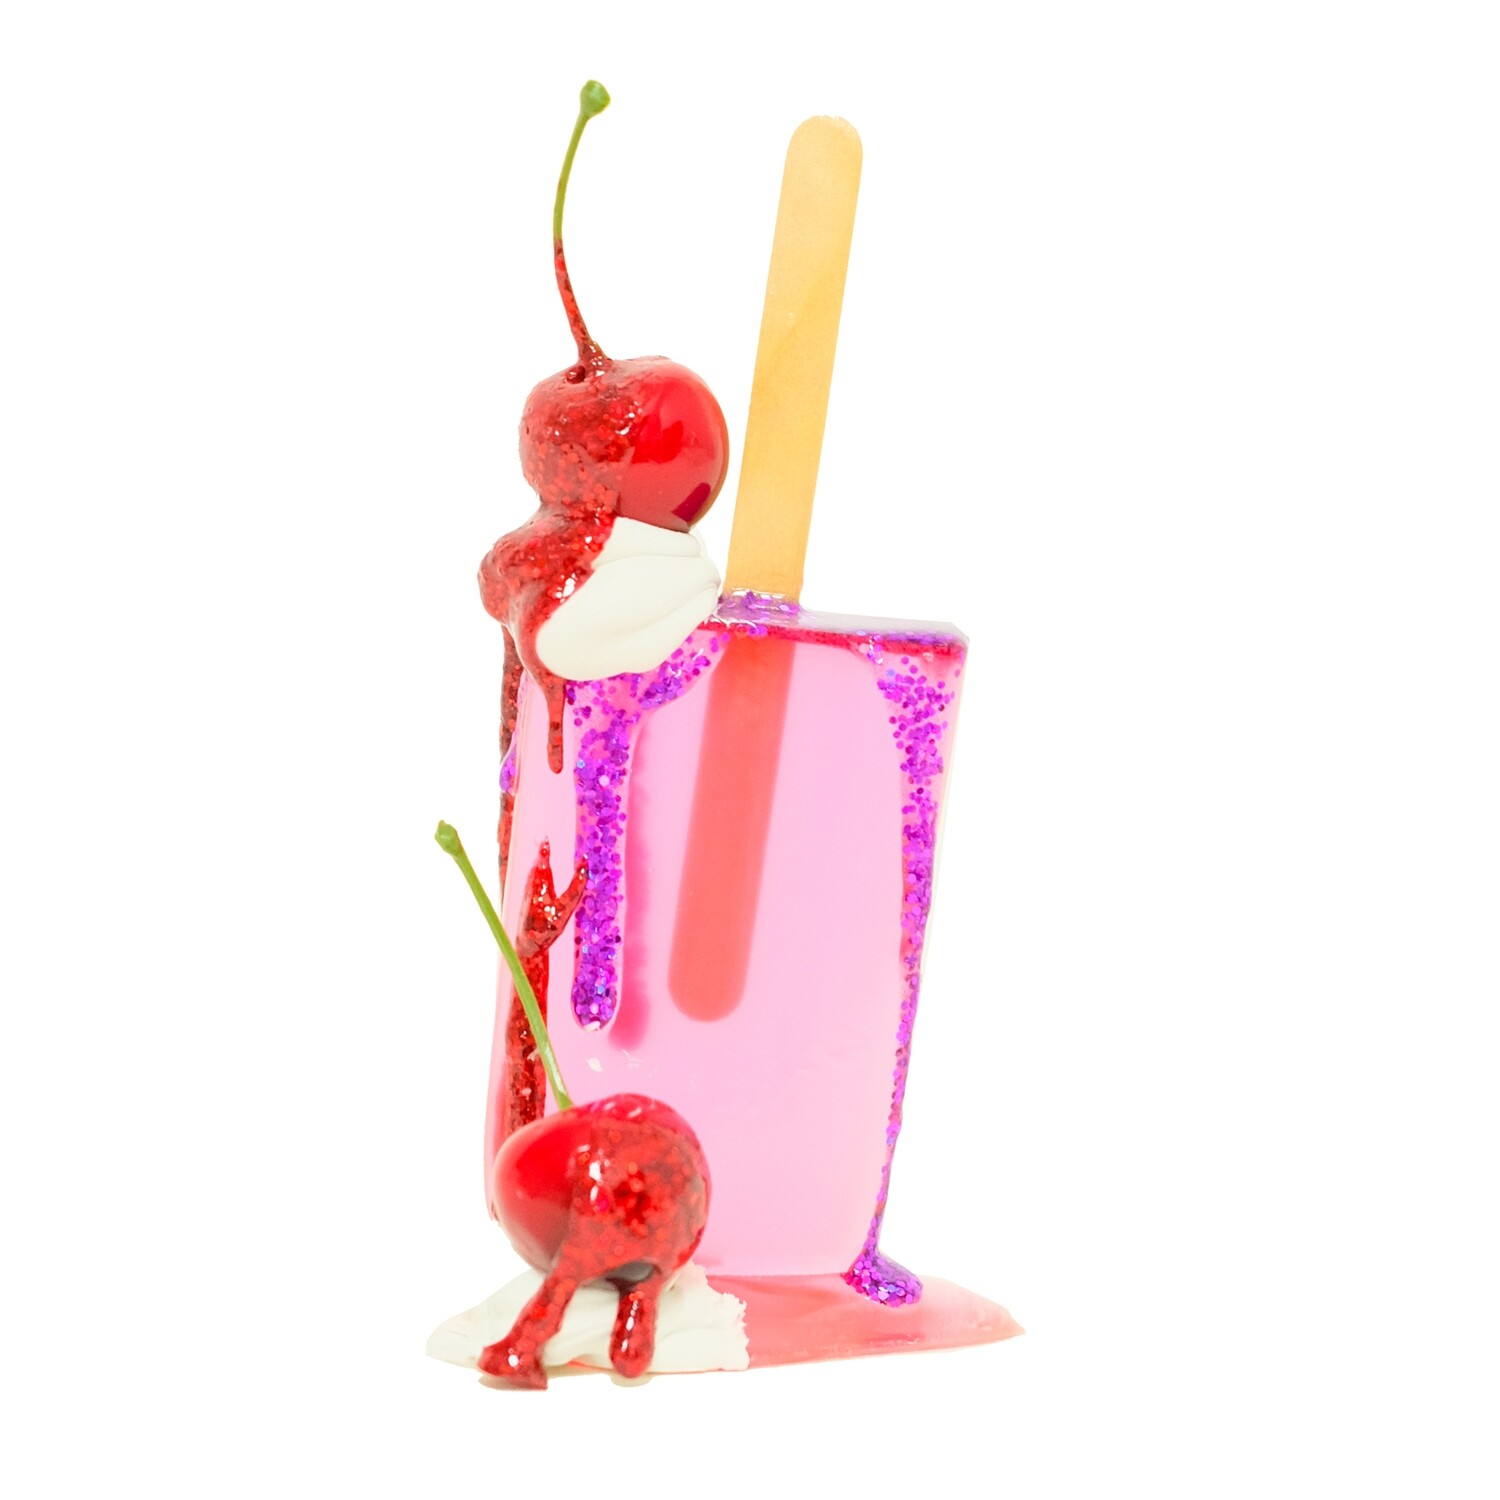 Melting Popsicle Art - 71 - Original Melting Pops